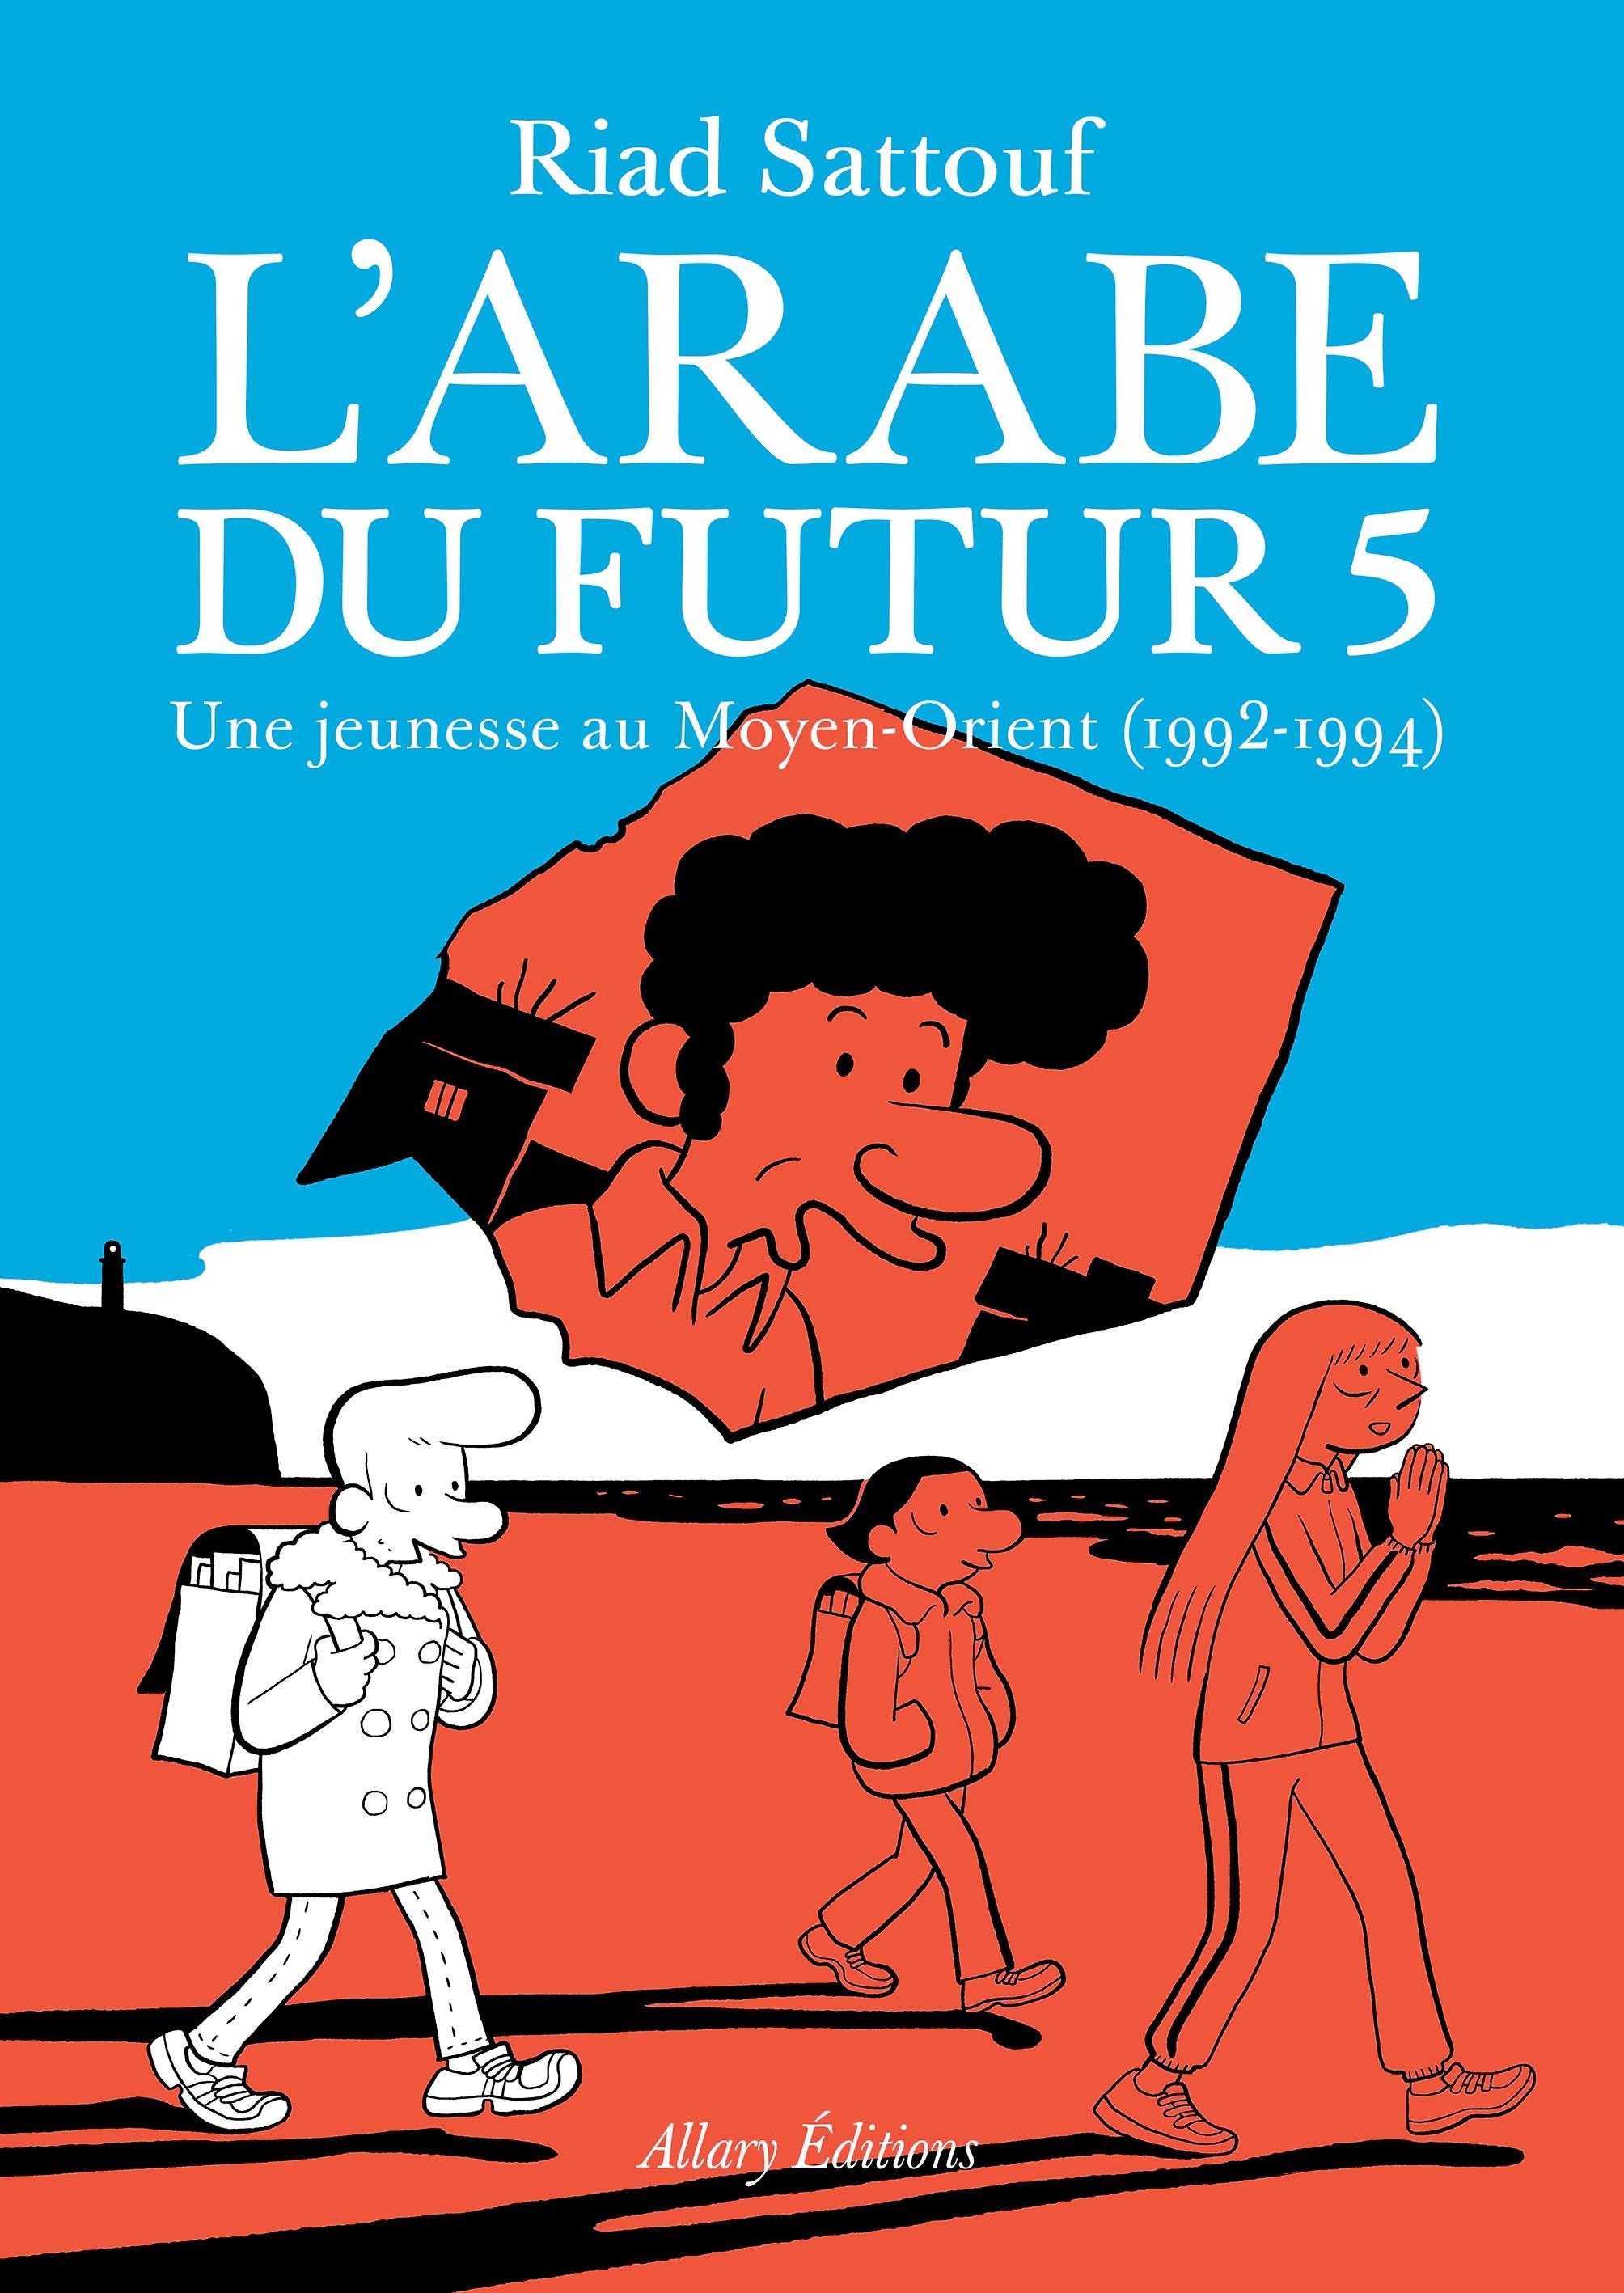 Couverture du livre "L'Arabe du futur 5" [Allary Editions]